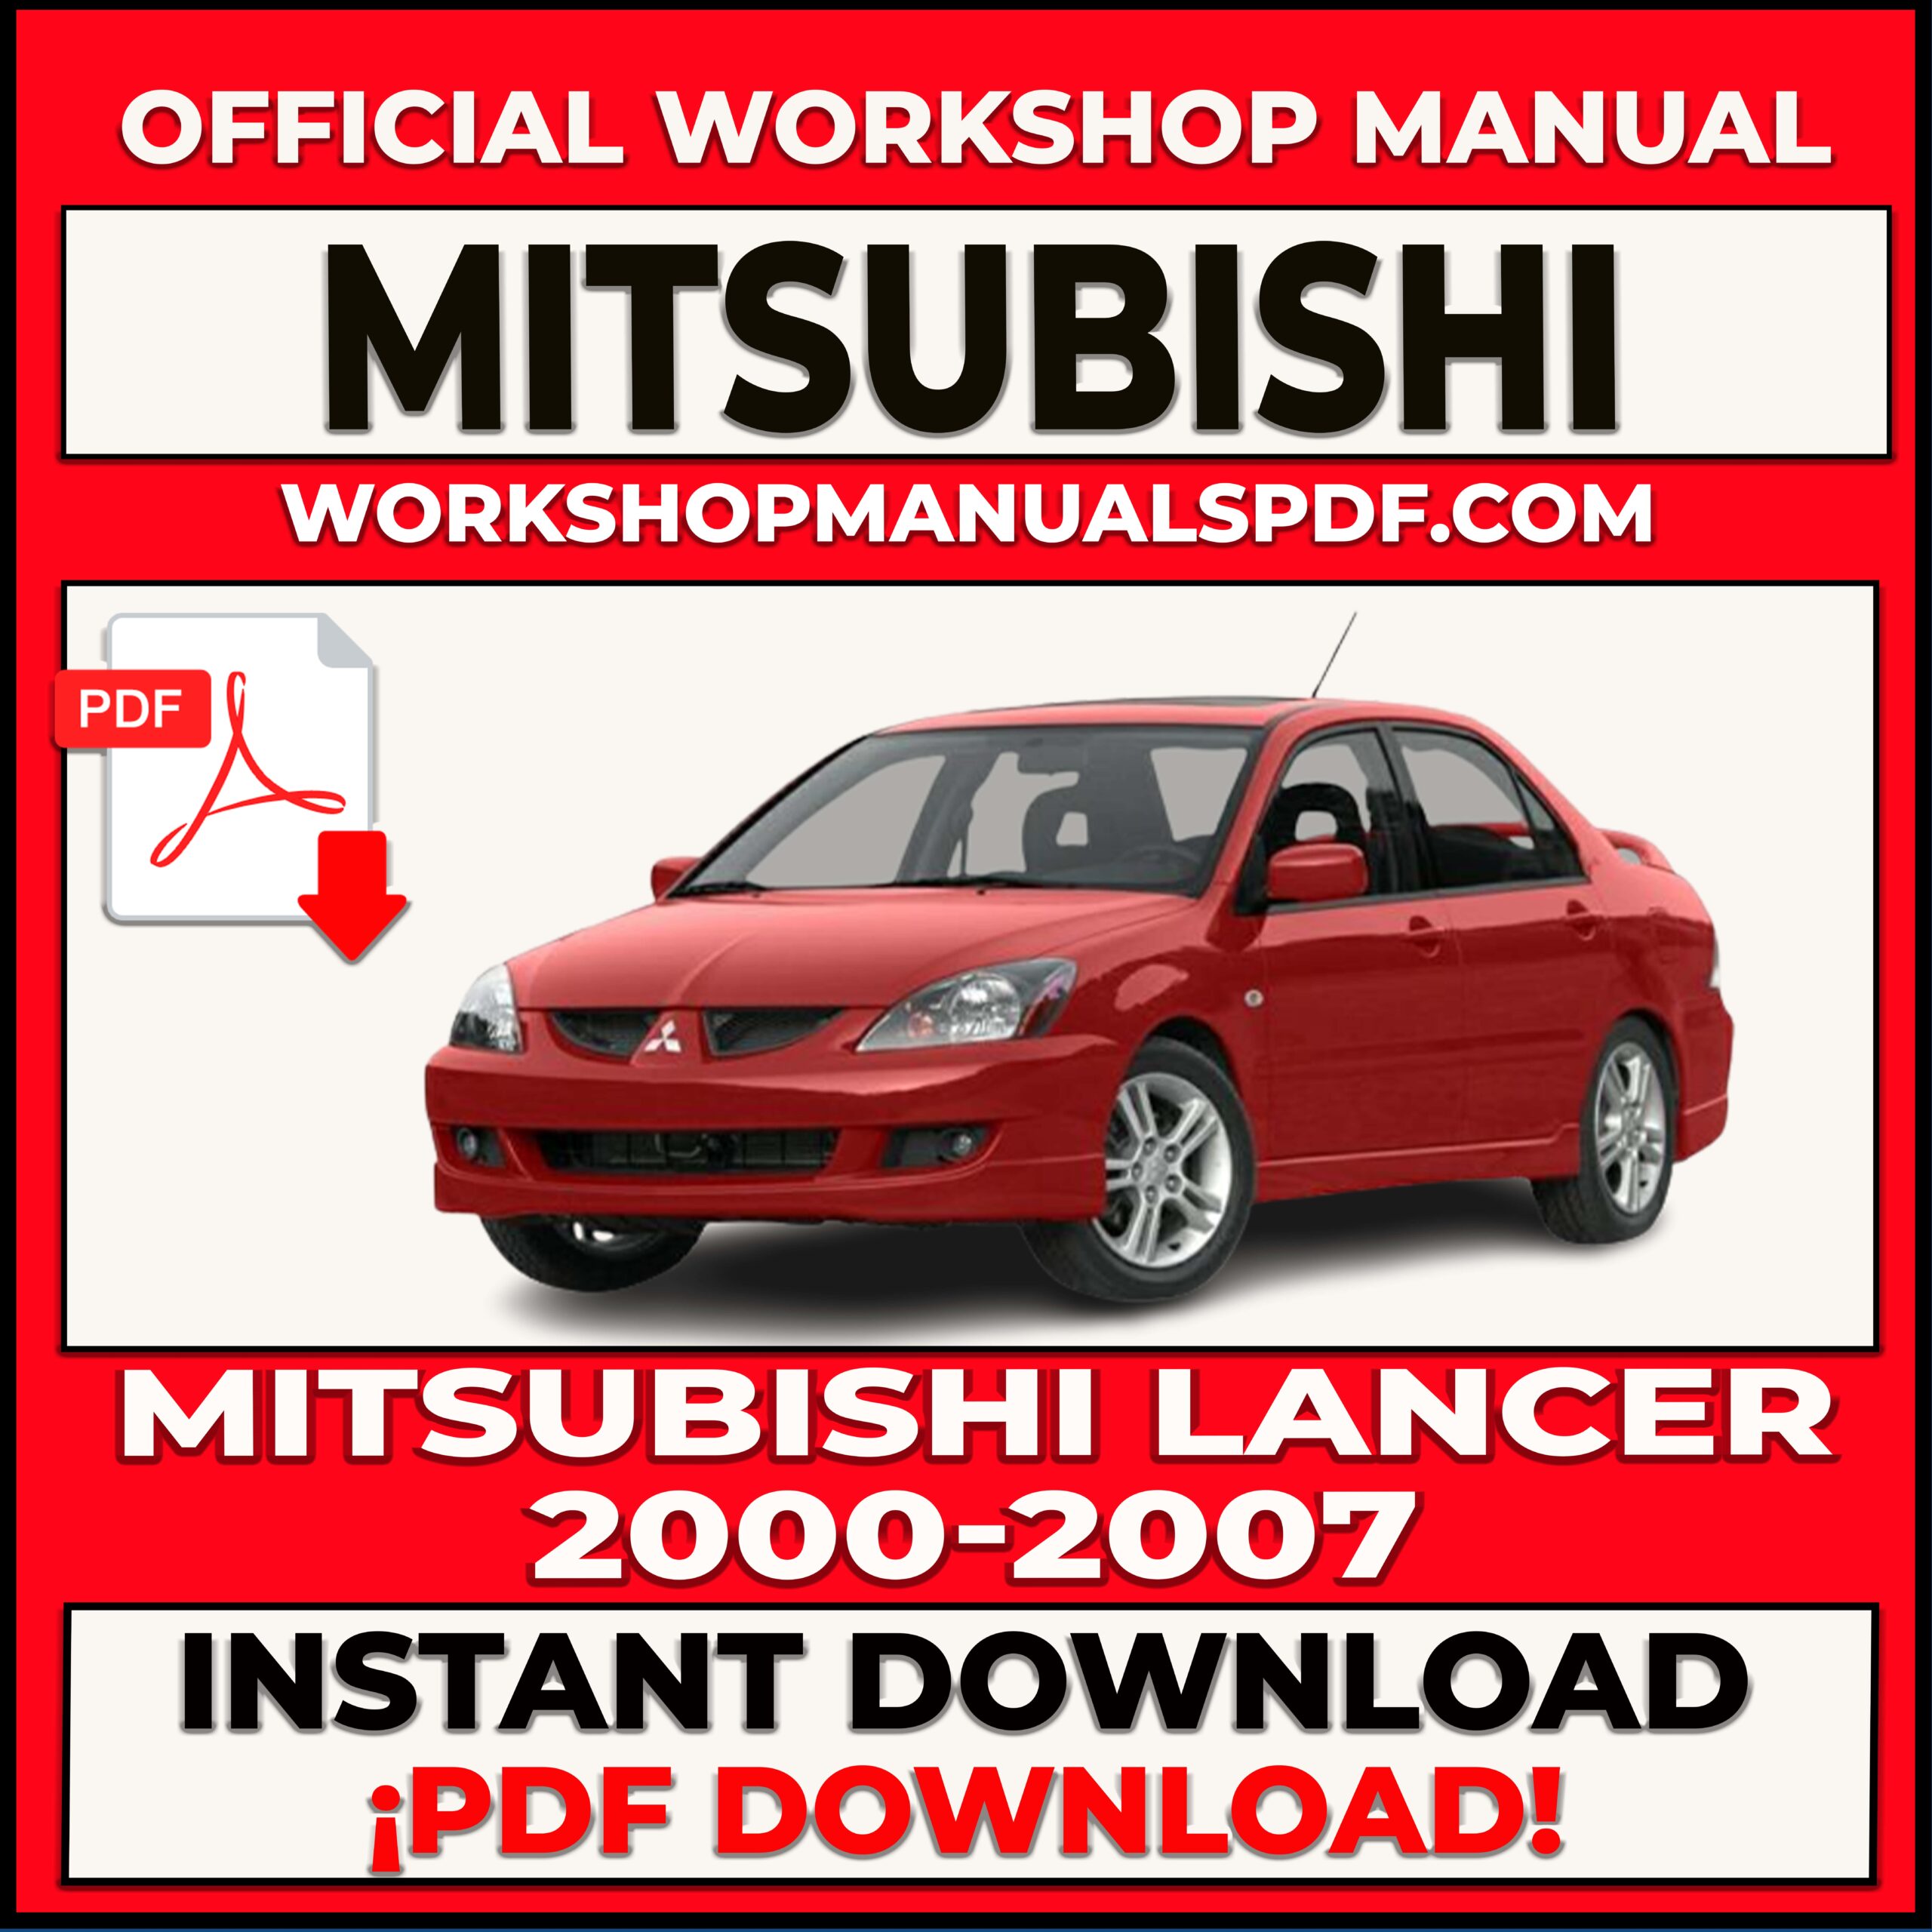 Mitsubishi Lancer 2000-2007 Workshop Repair Manual